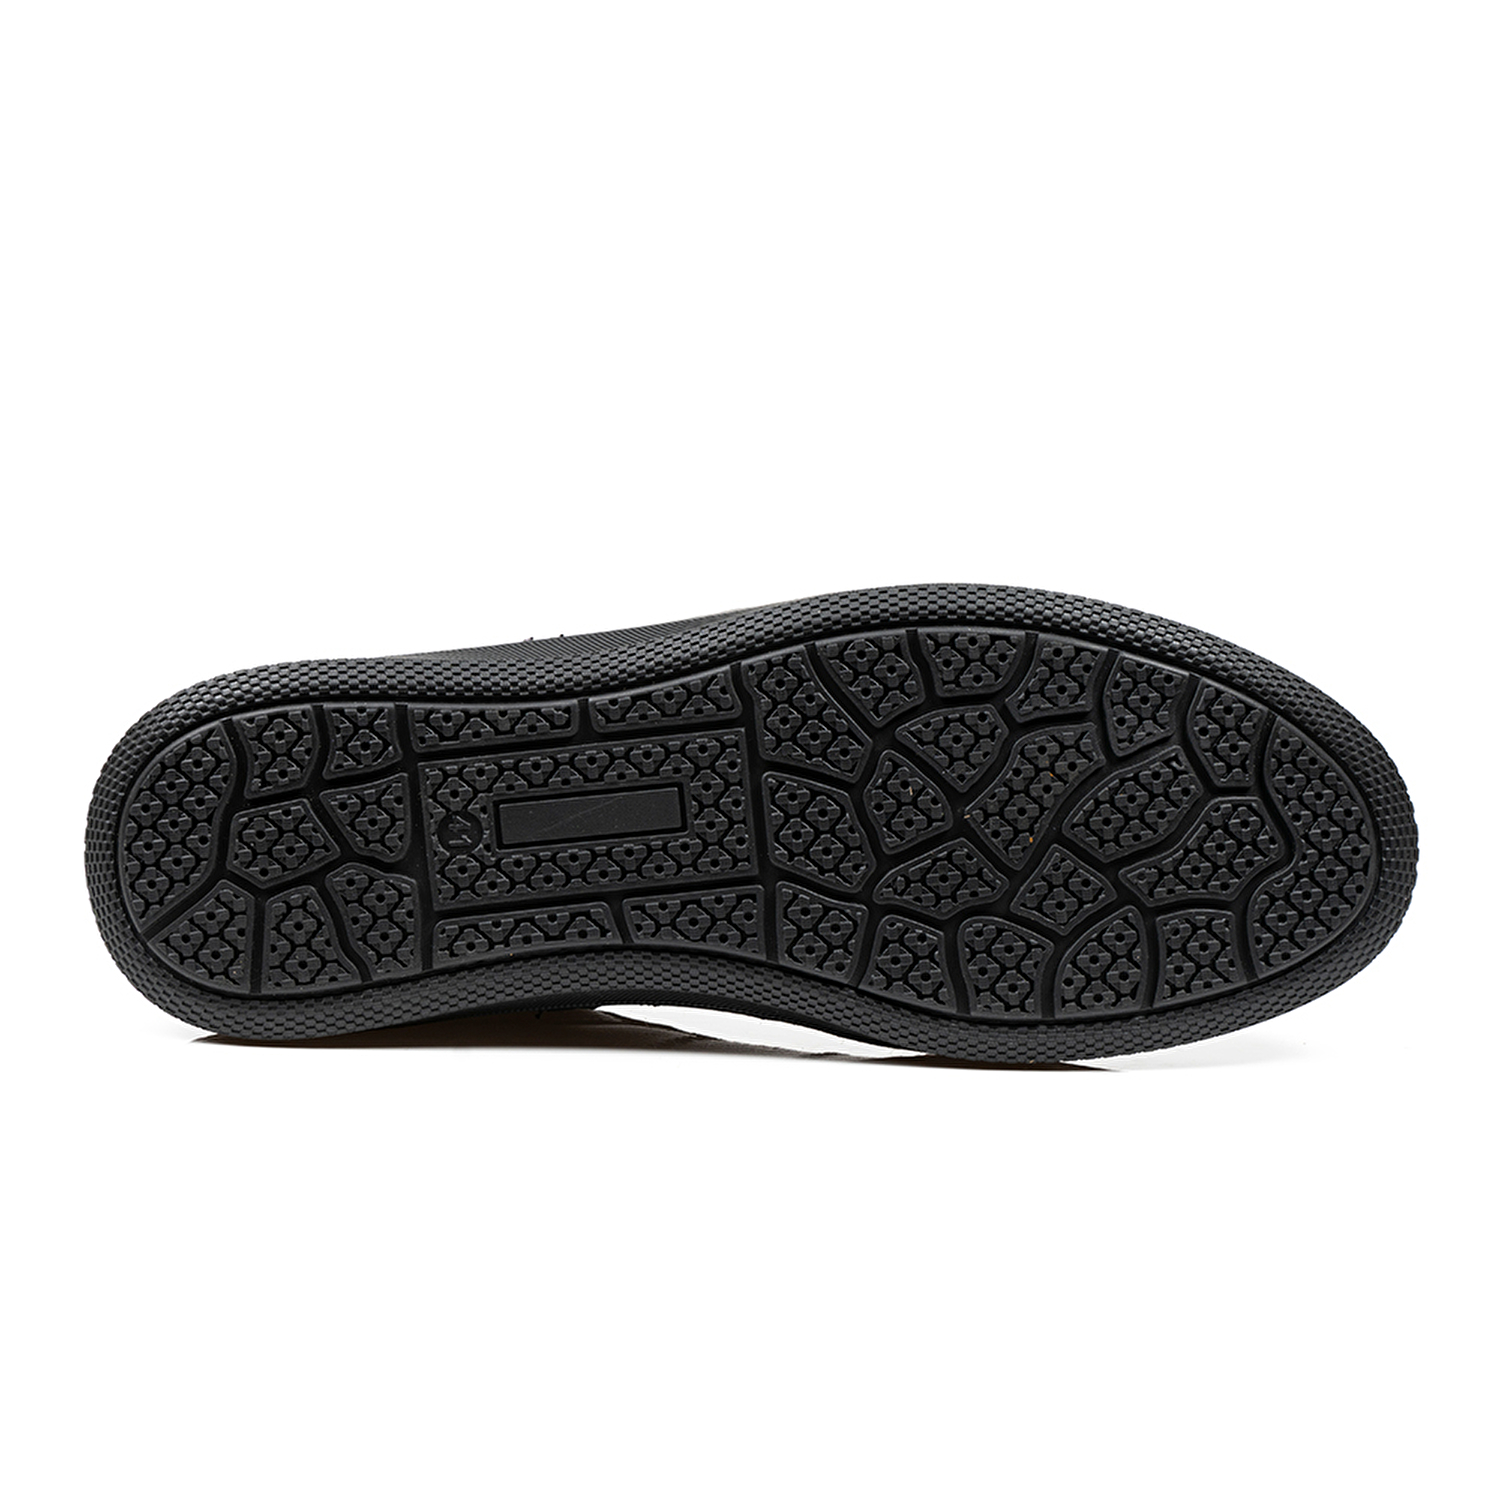 Klasik Erkek Ayakkabı Siyah 67905-6